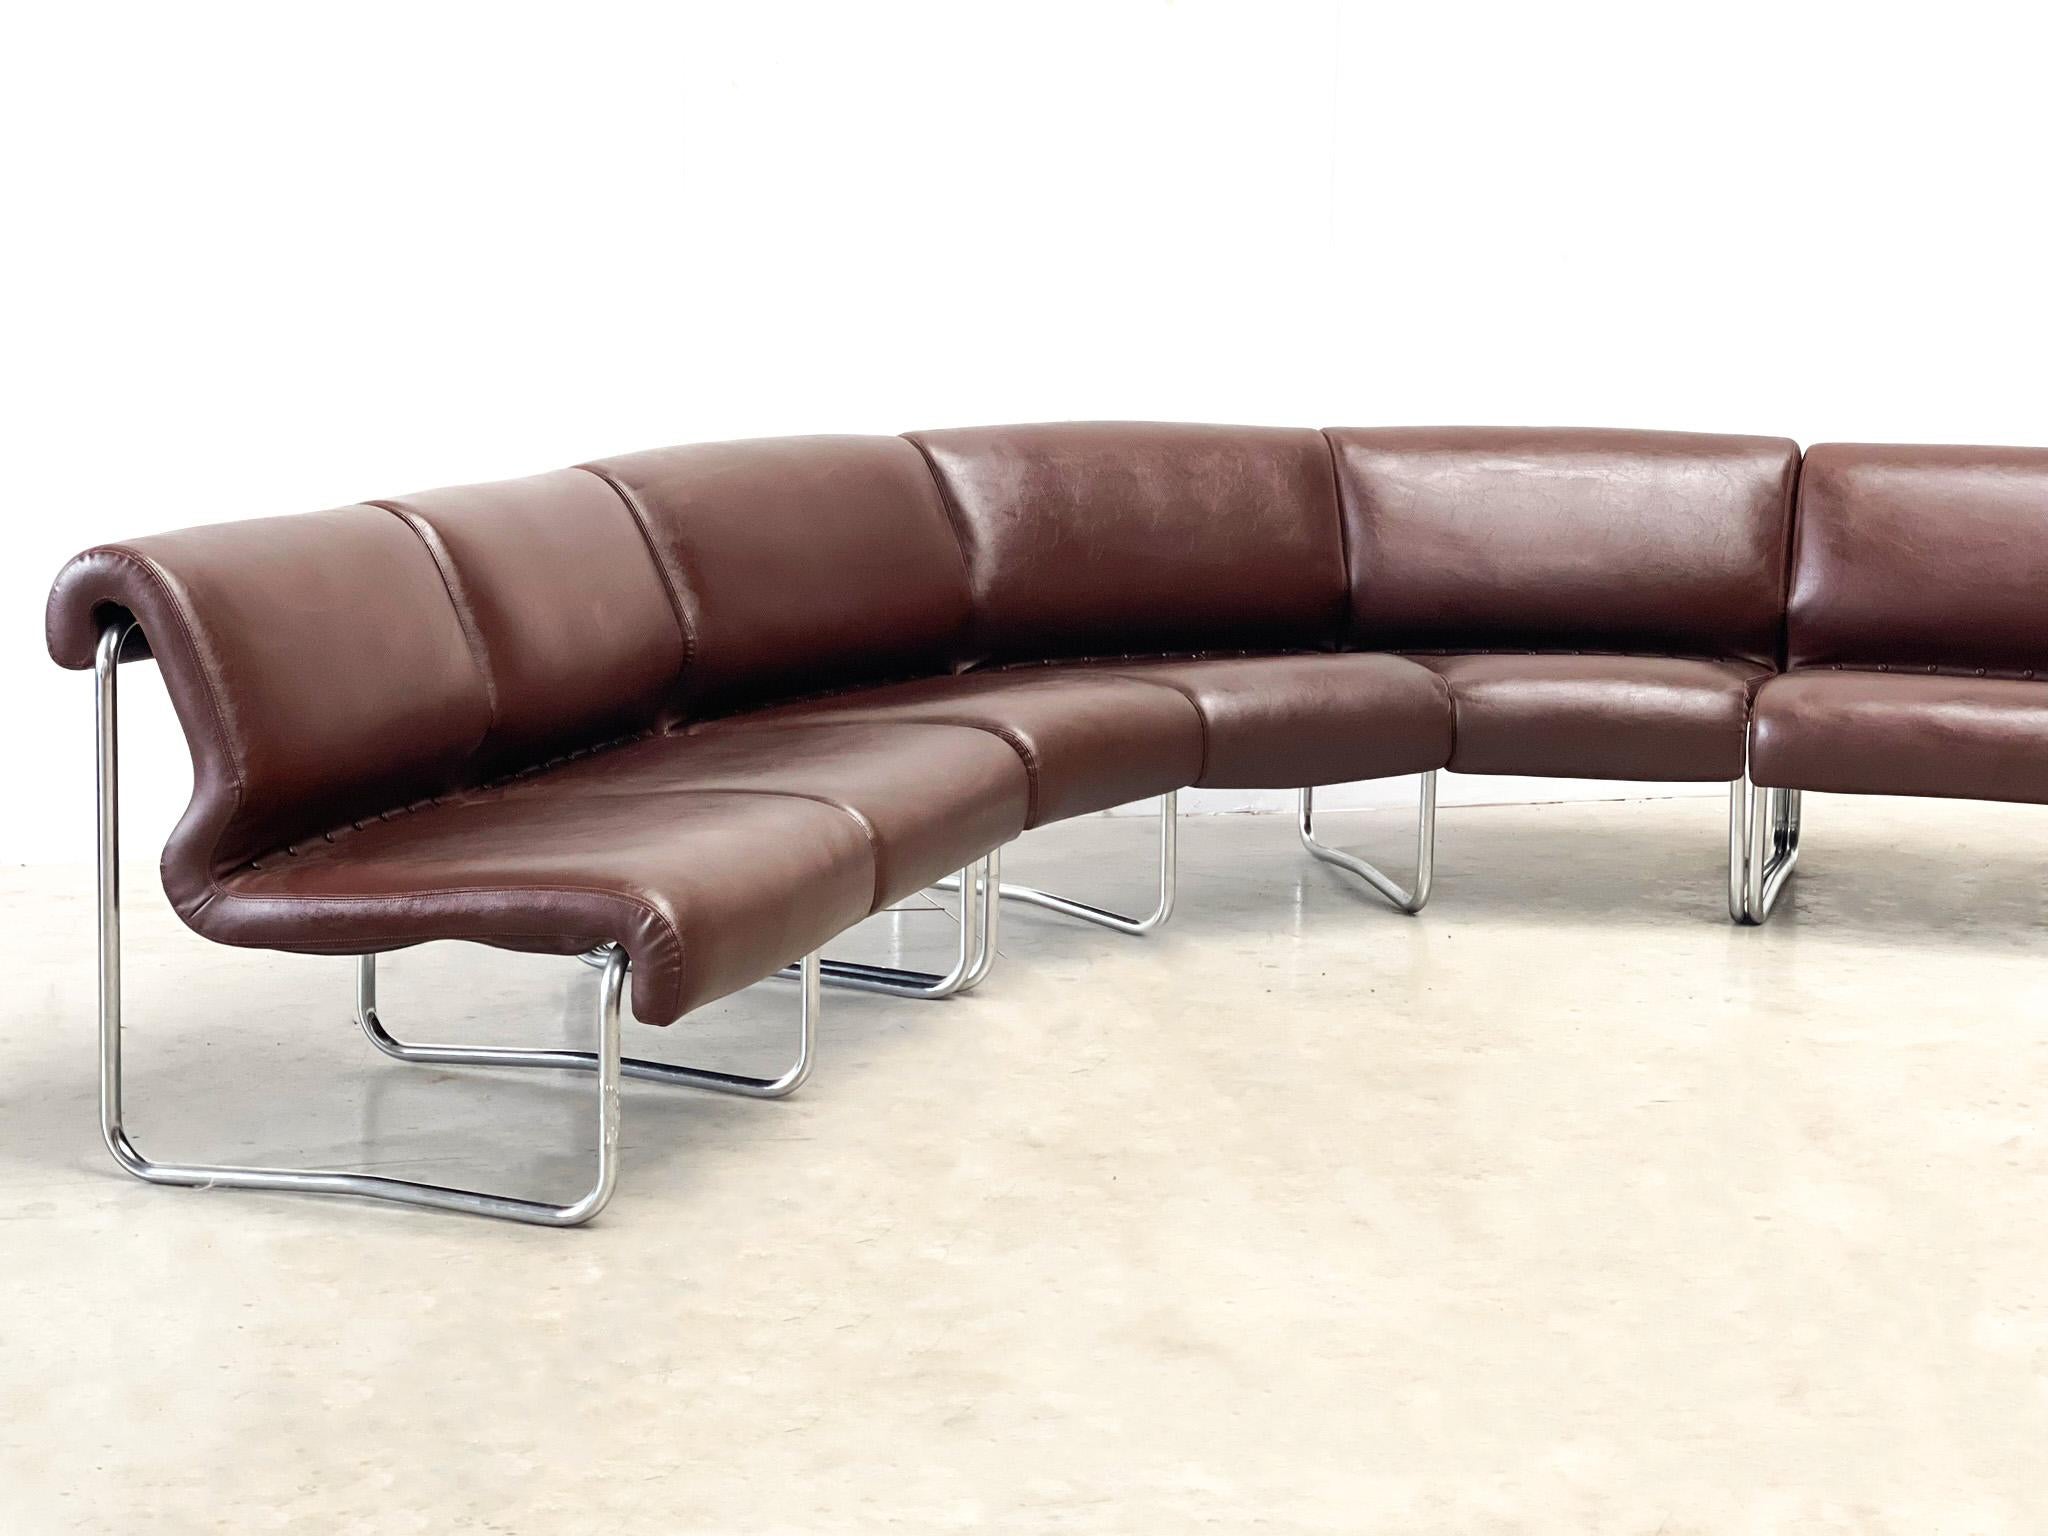 Eine modulare Sofagarnitur aus Eichenholz aus den 1970er Jahren mit einem erstaunlichen braunen Leder und  Metallrahmen
Das Sofa kann wie abgebildet oder in Abschnitten um den Raum herum konfiguriert werden. Er verfügt über einen 3-Sitzer, 2-Sitzer